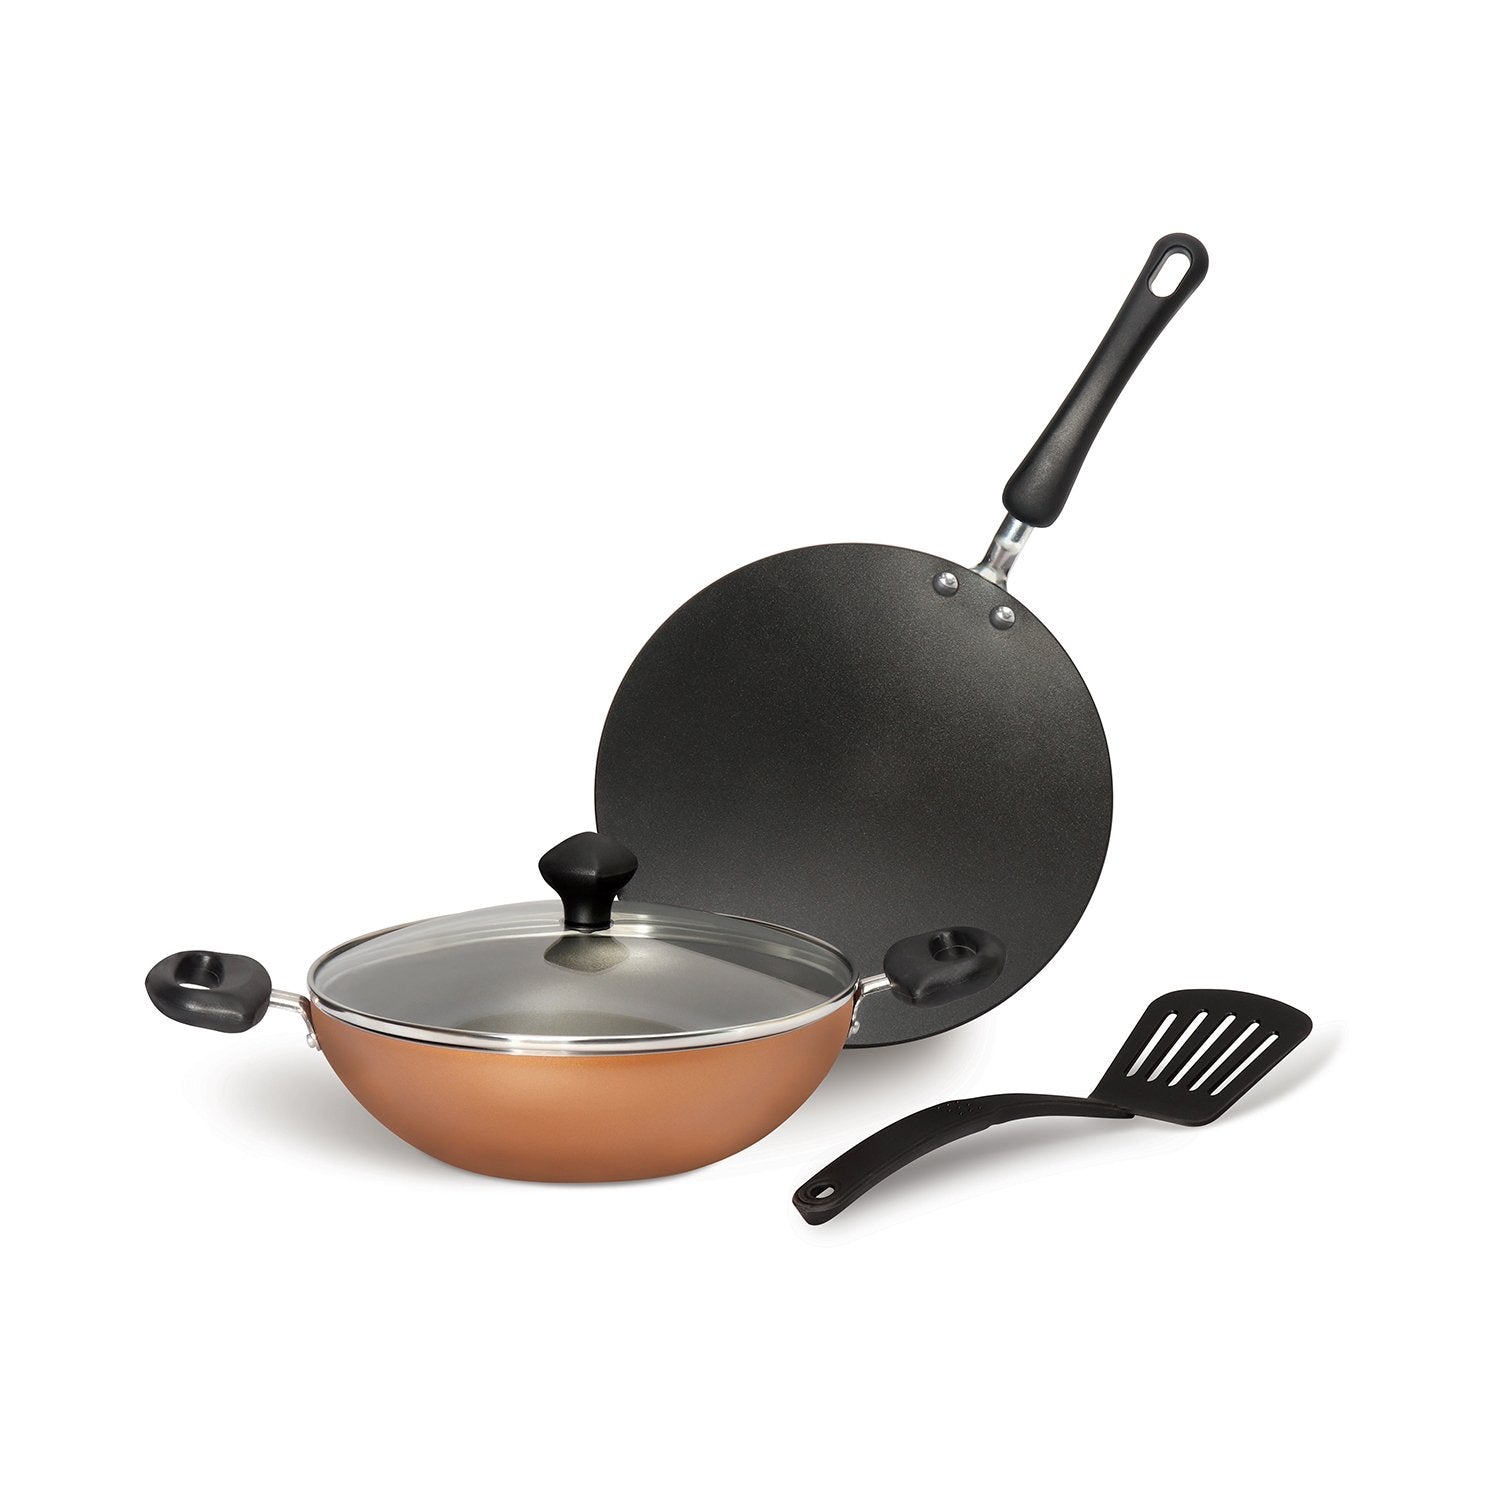 Meyer Non-Stick 4pcs Cookware Set (Kadai + Curved Roti/Chappati Tawa + Nylon Turner) - Pots and Pans